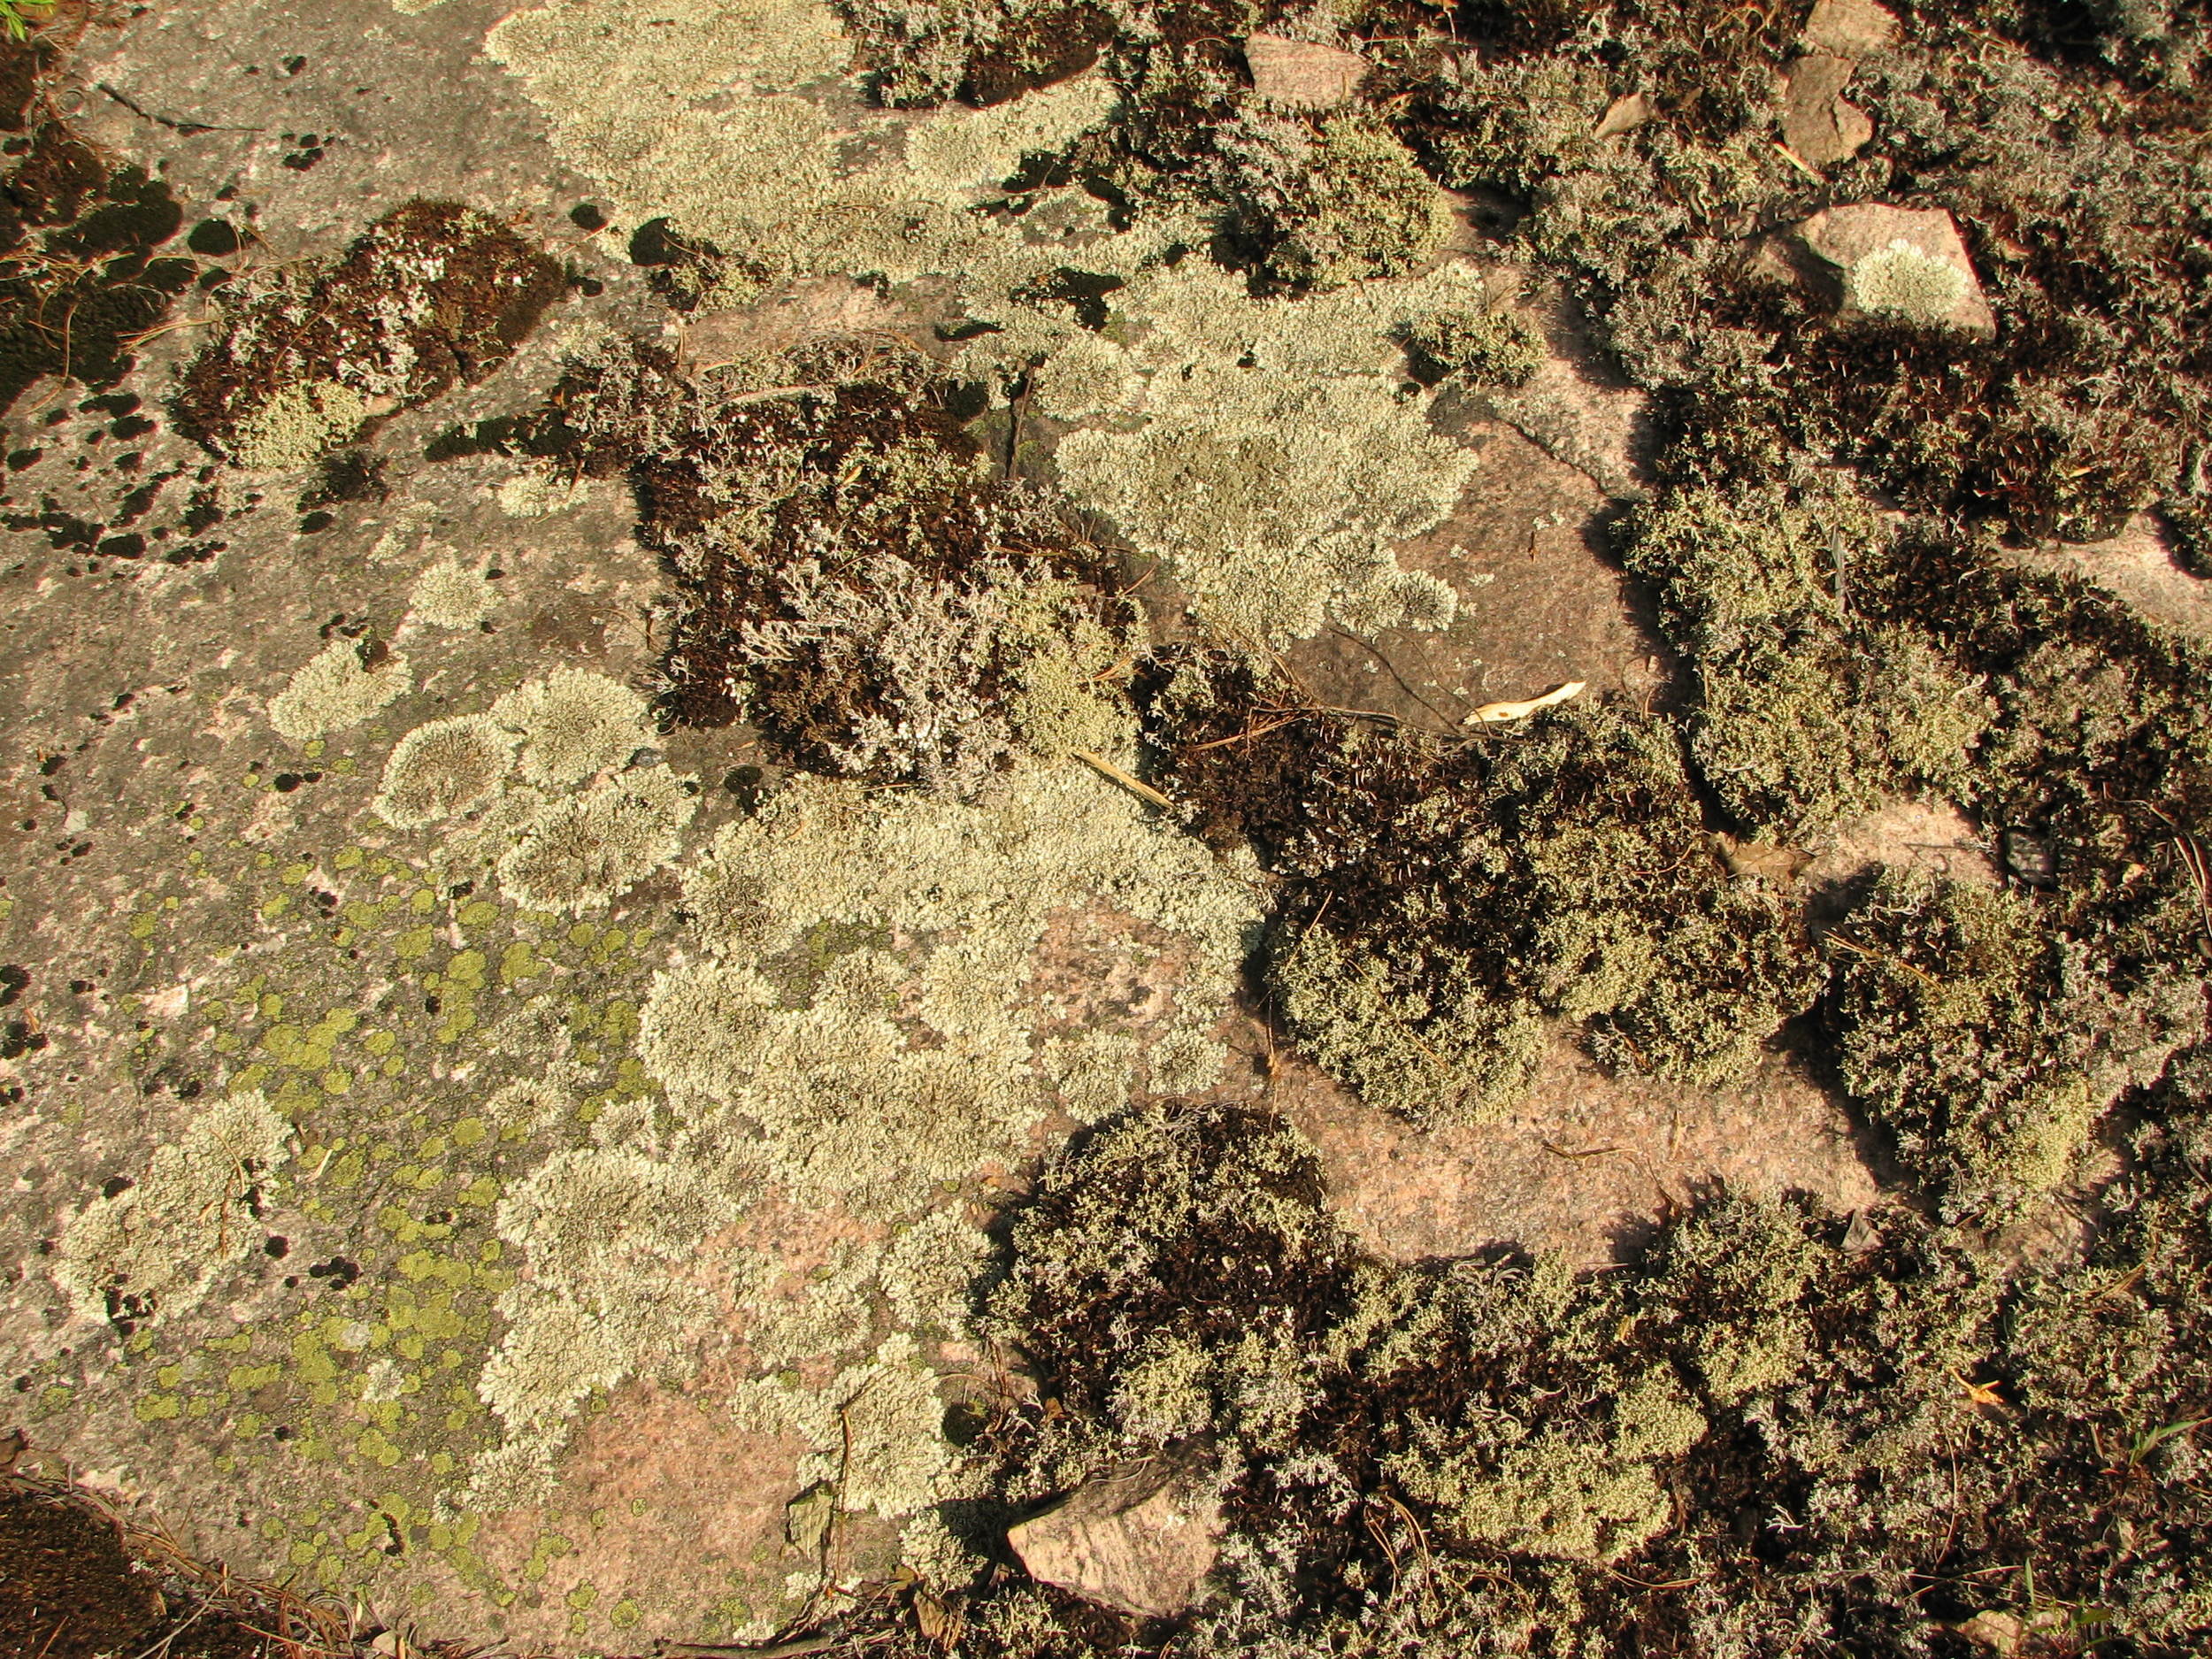 Lichens on rock